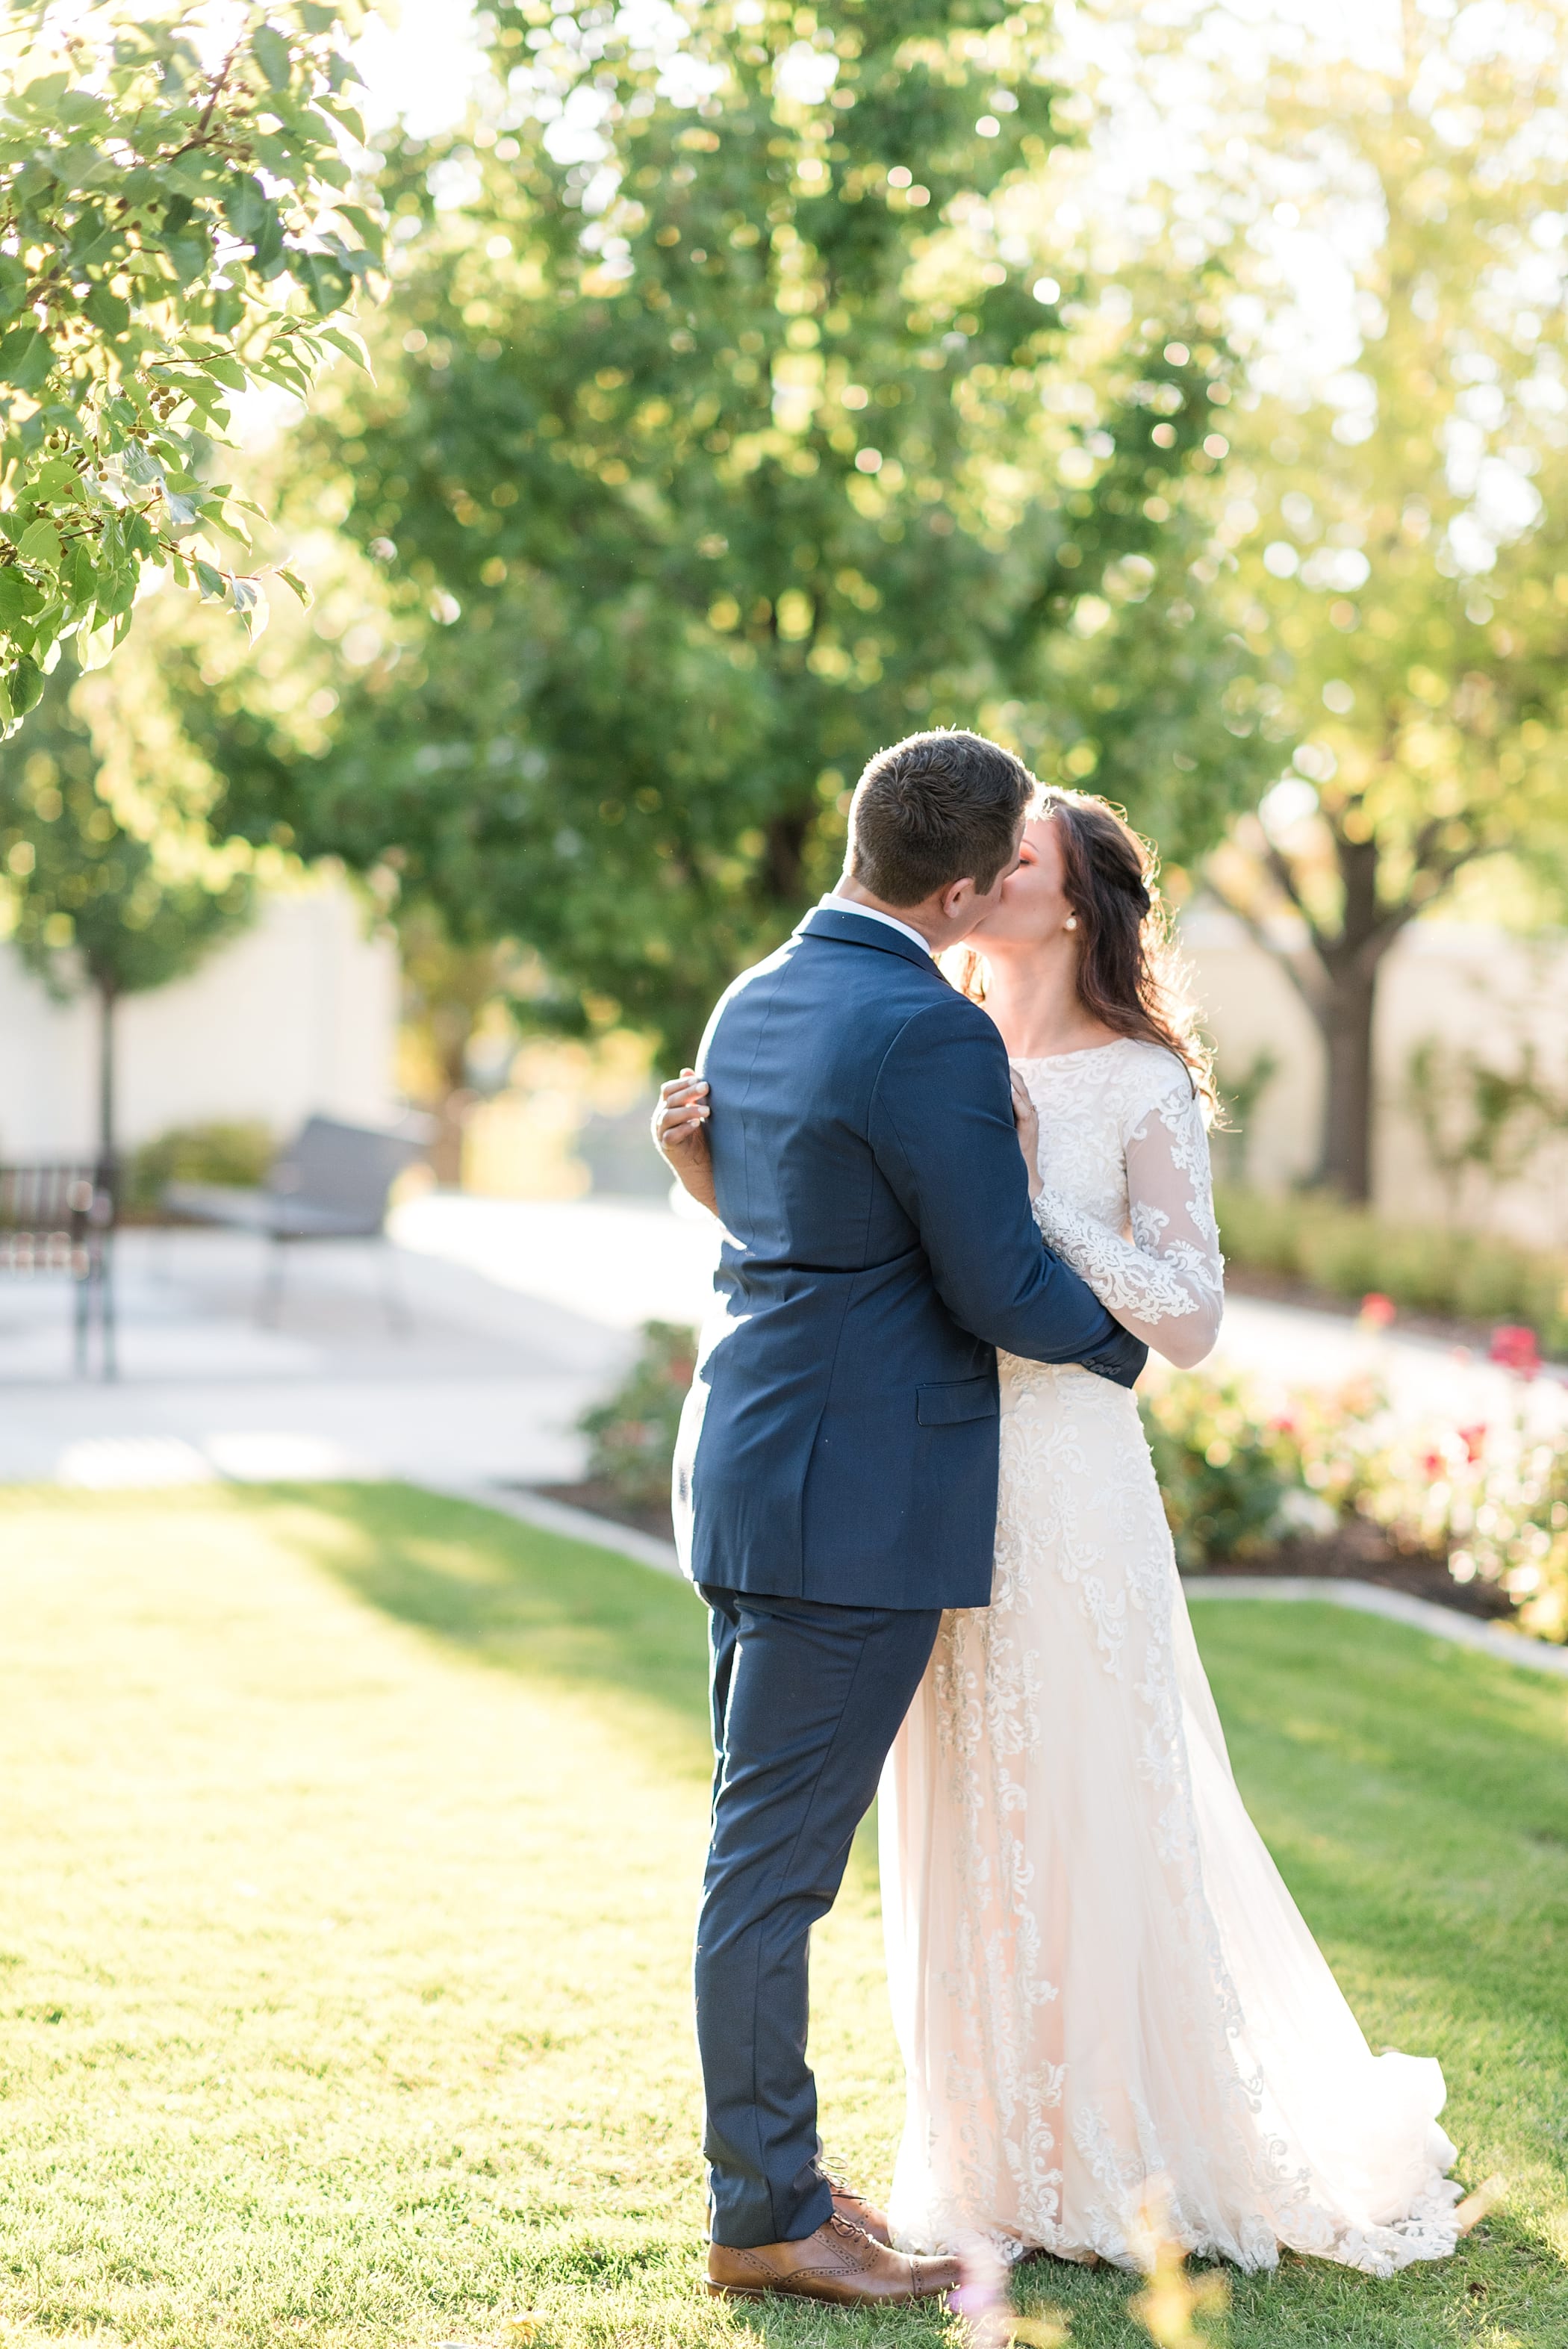 Idaho Falls LDS Temple Wedding | Fall Wedding in Idaho by Michelle & Logan